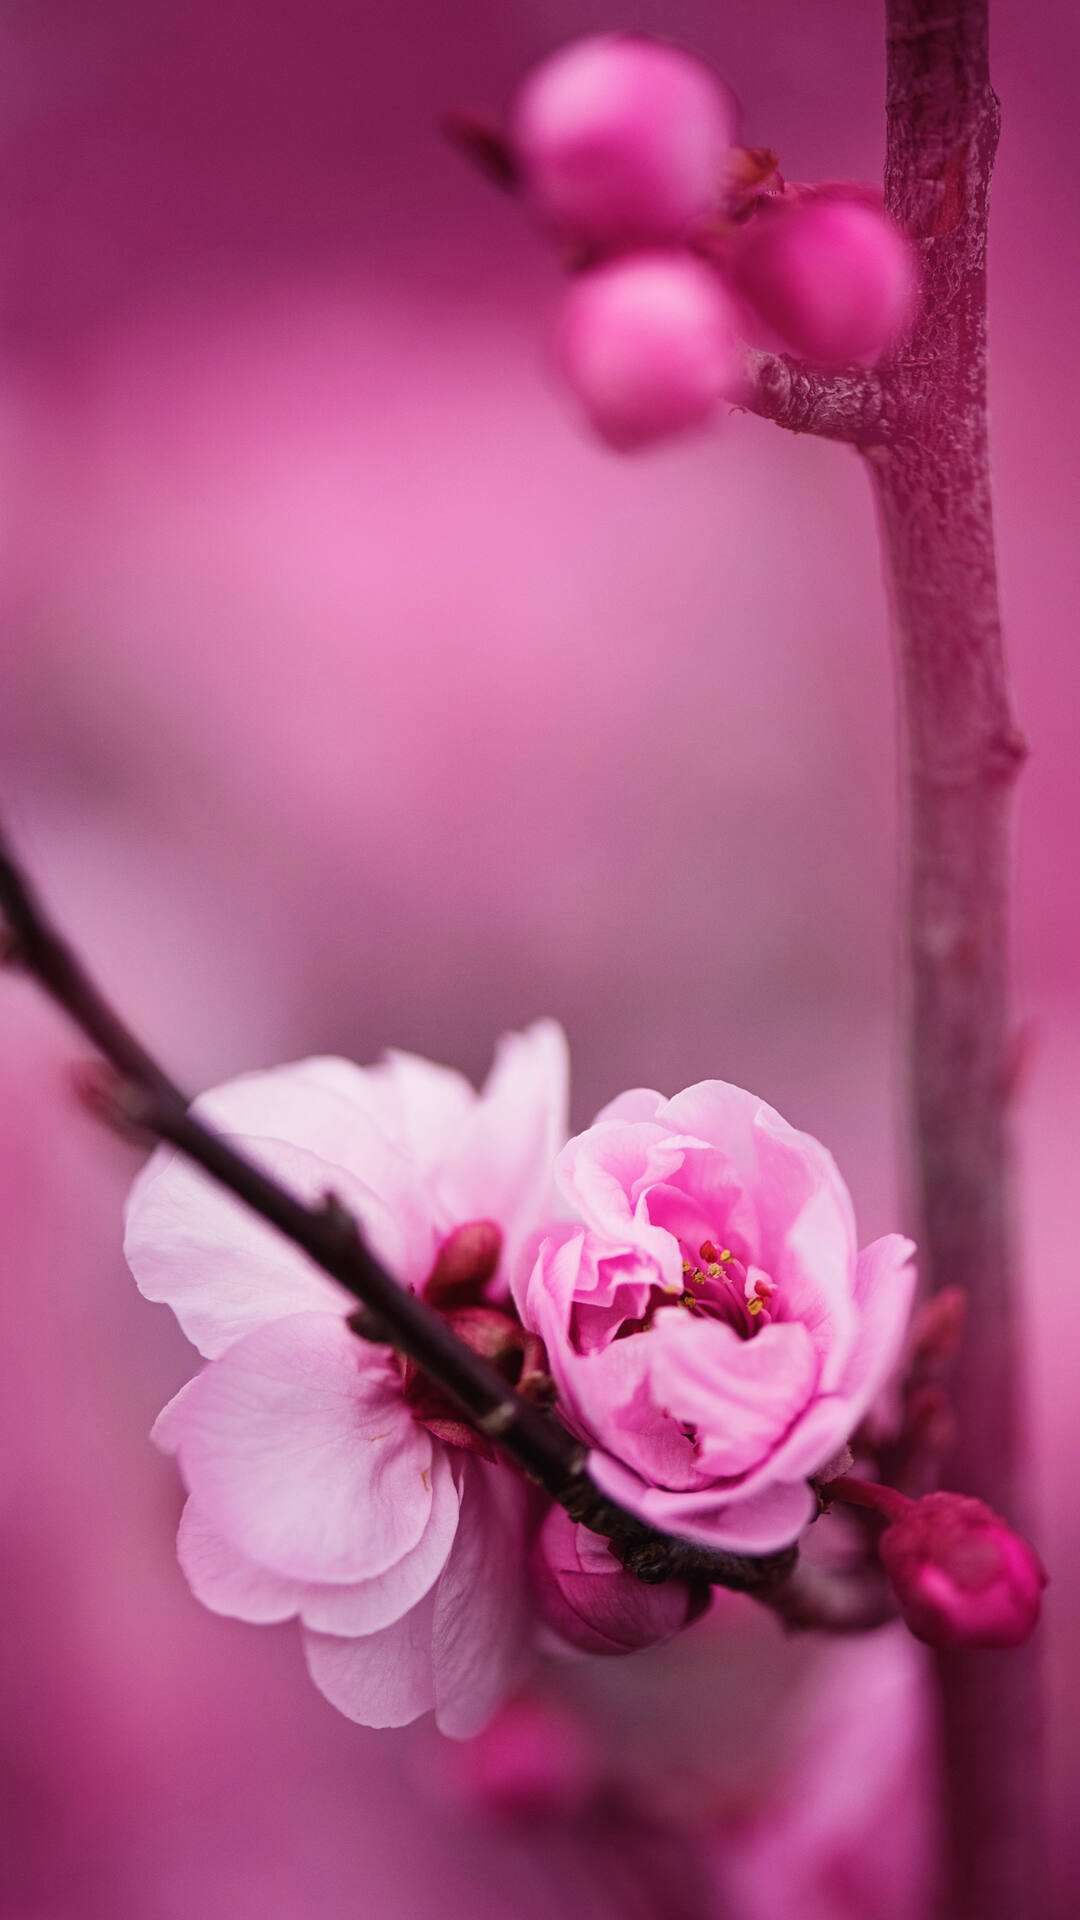 盛开的粉色蔷薇科植物樱花的唯美摄影手机壁纸套图1